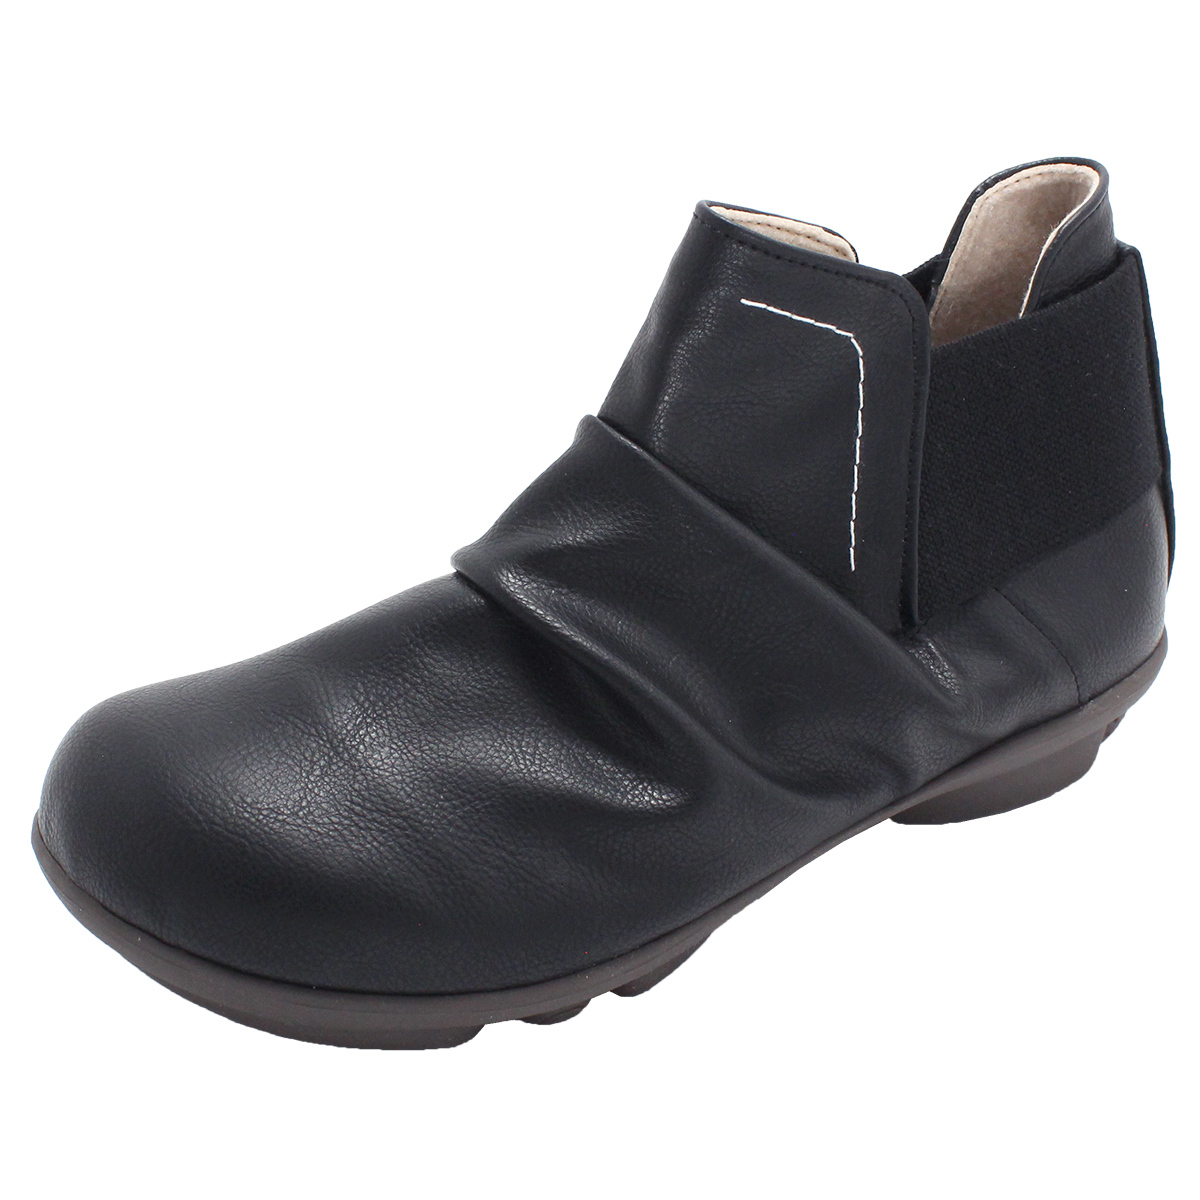 ツヴォル 2ball レディース ブーツ ショートブーツ 大きいサイズ 靴 歩きやすい 外反母趾 ツ...